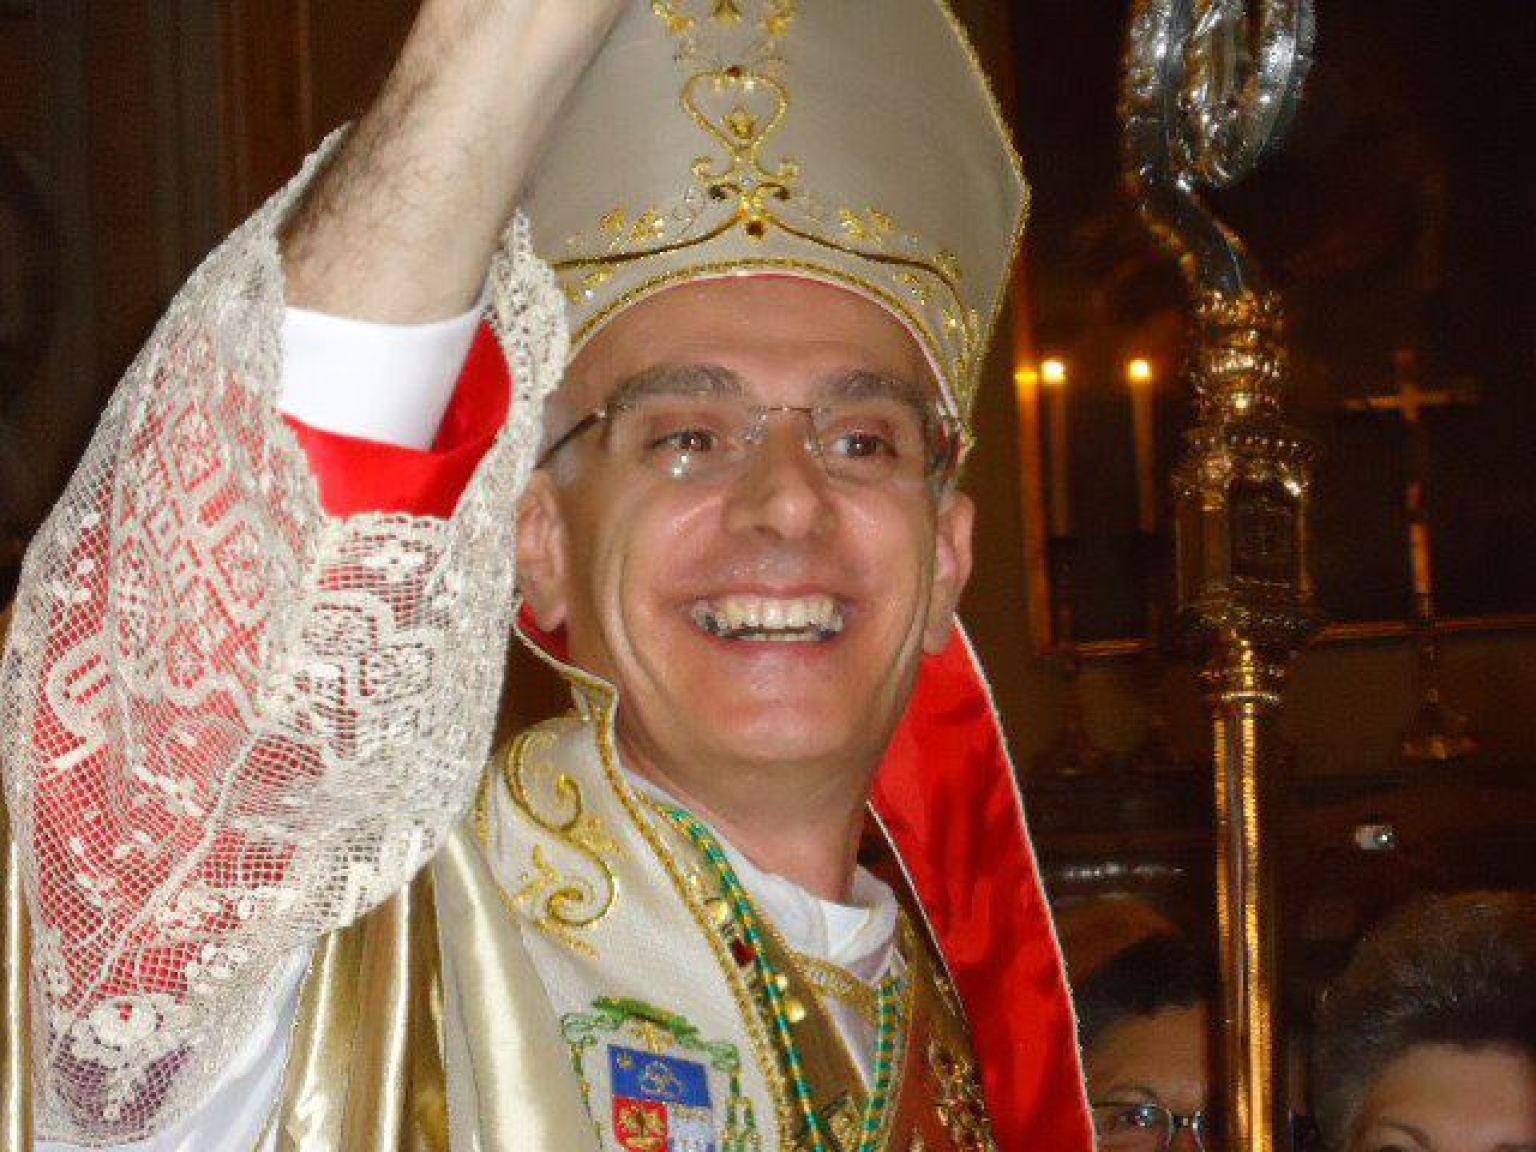 Il parroco e gli abusi sessuali, la posizione del Vescovo